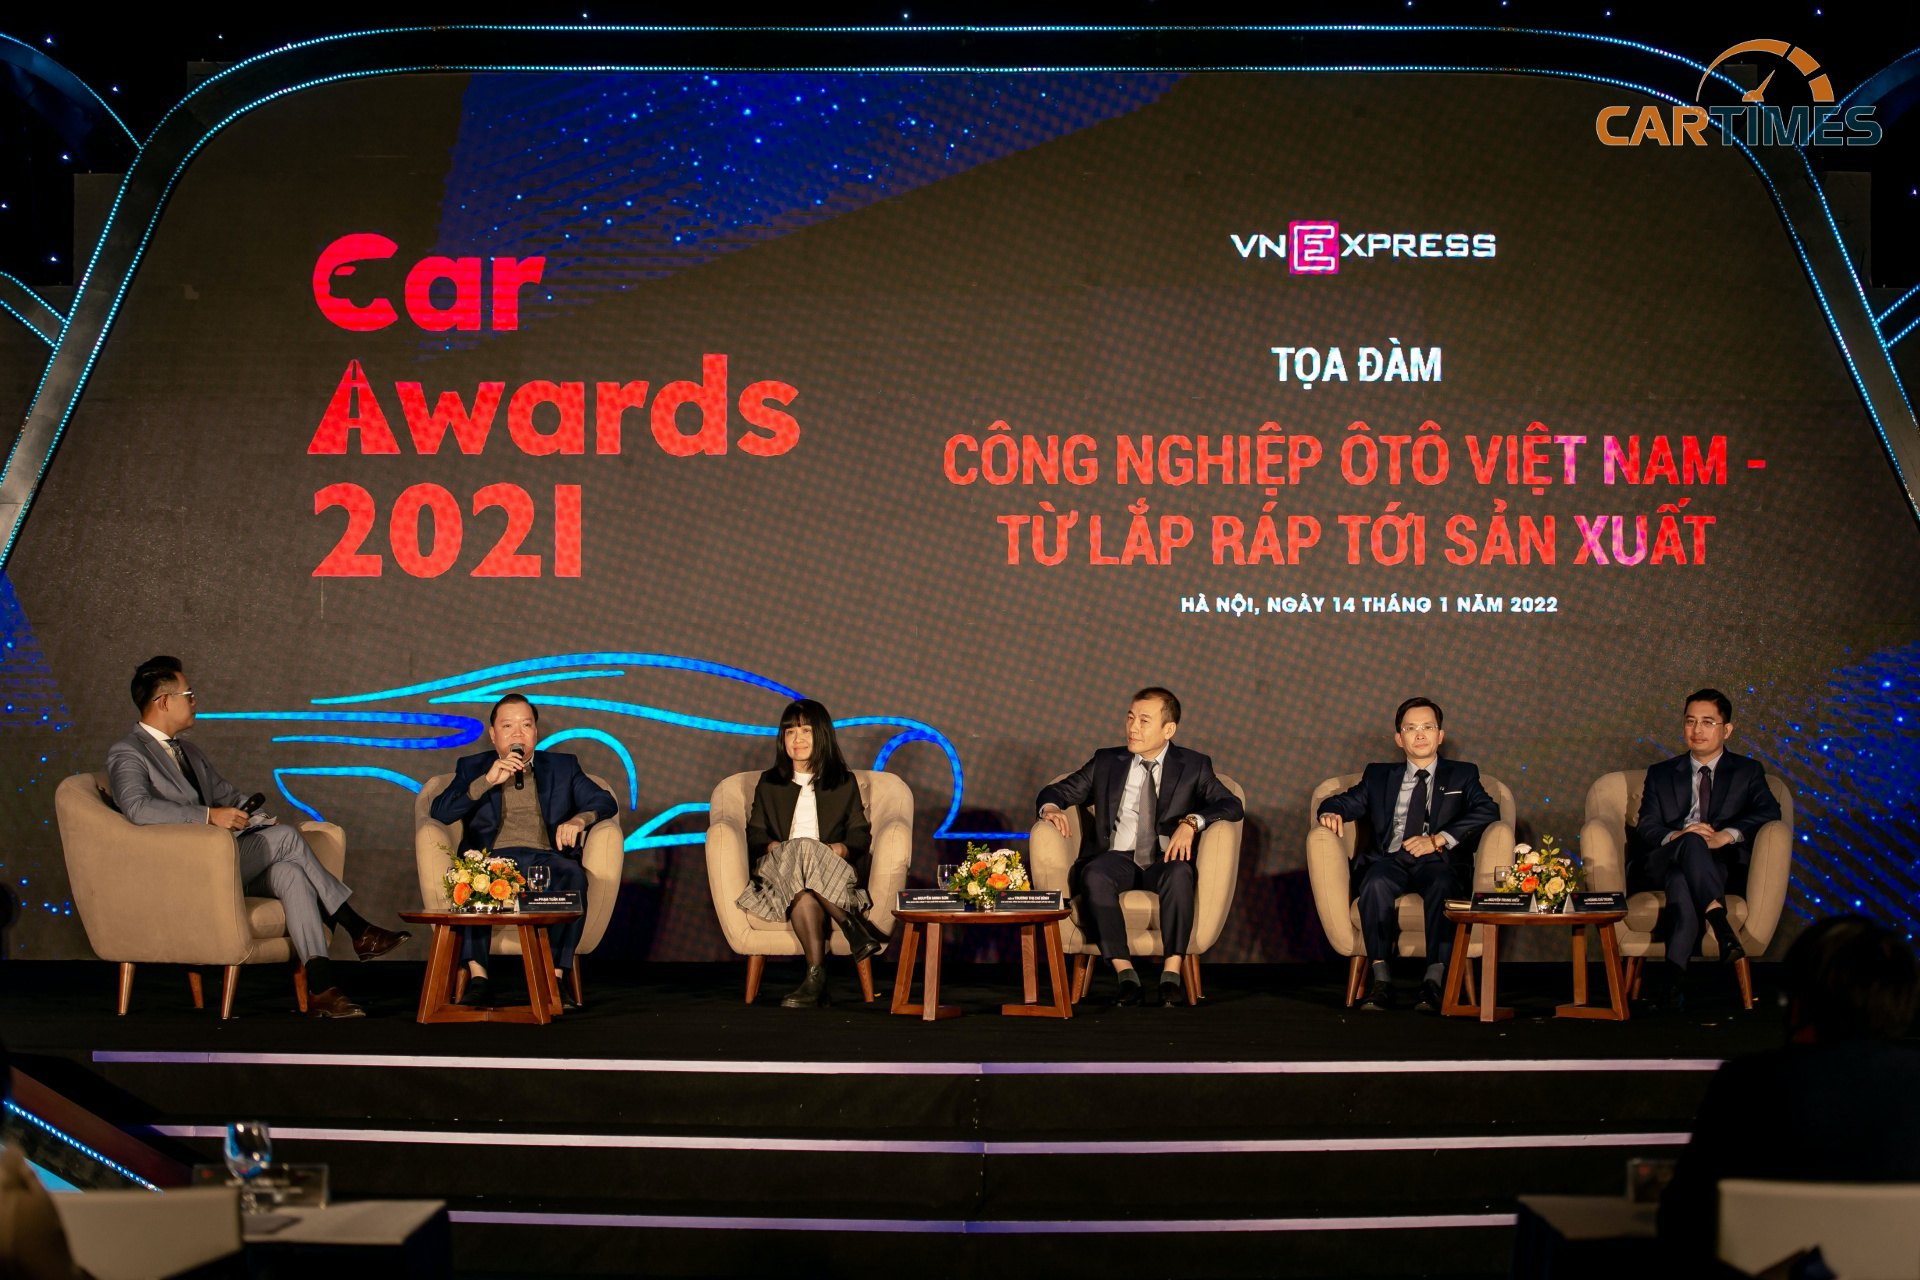 toạ đàm về chủ đề “Công nghiệp ô tô Việt Nam - từ lắp ráp tới sản xuất”